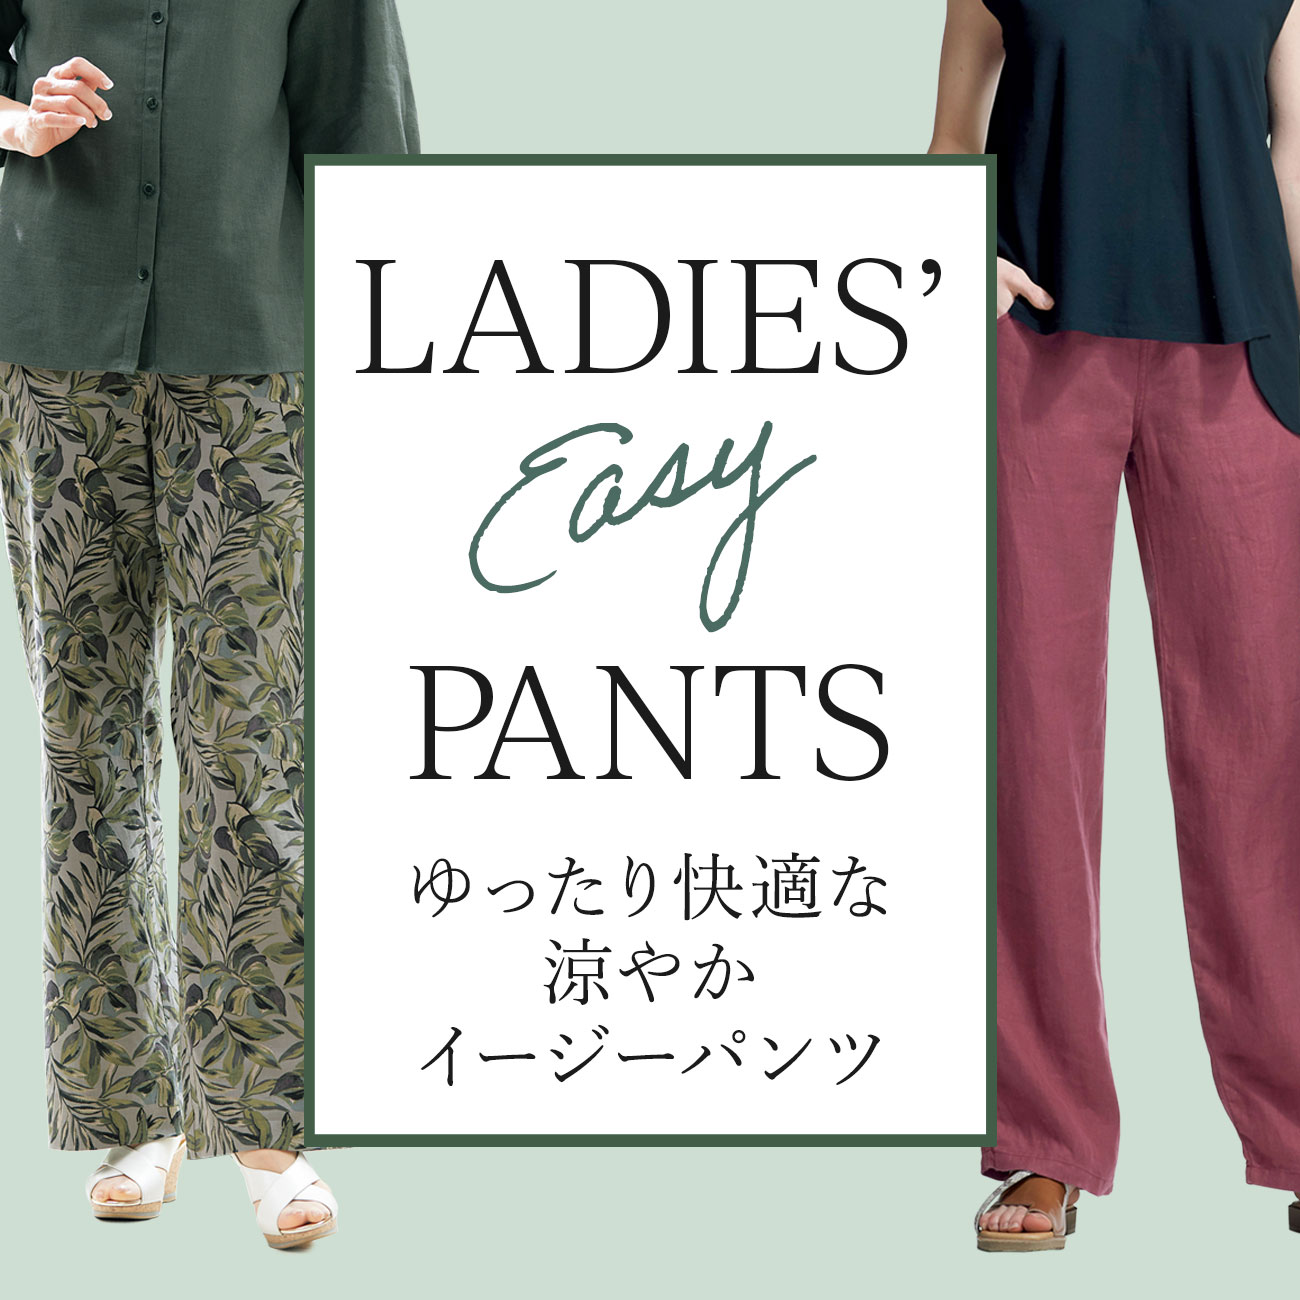 【特集】ゆったりイージーパンツ for Ladies